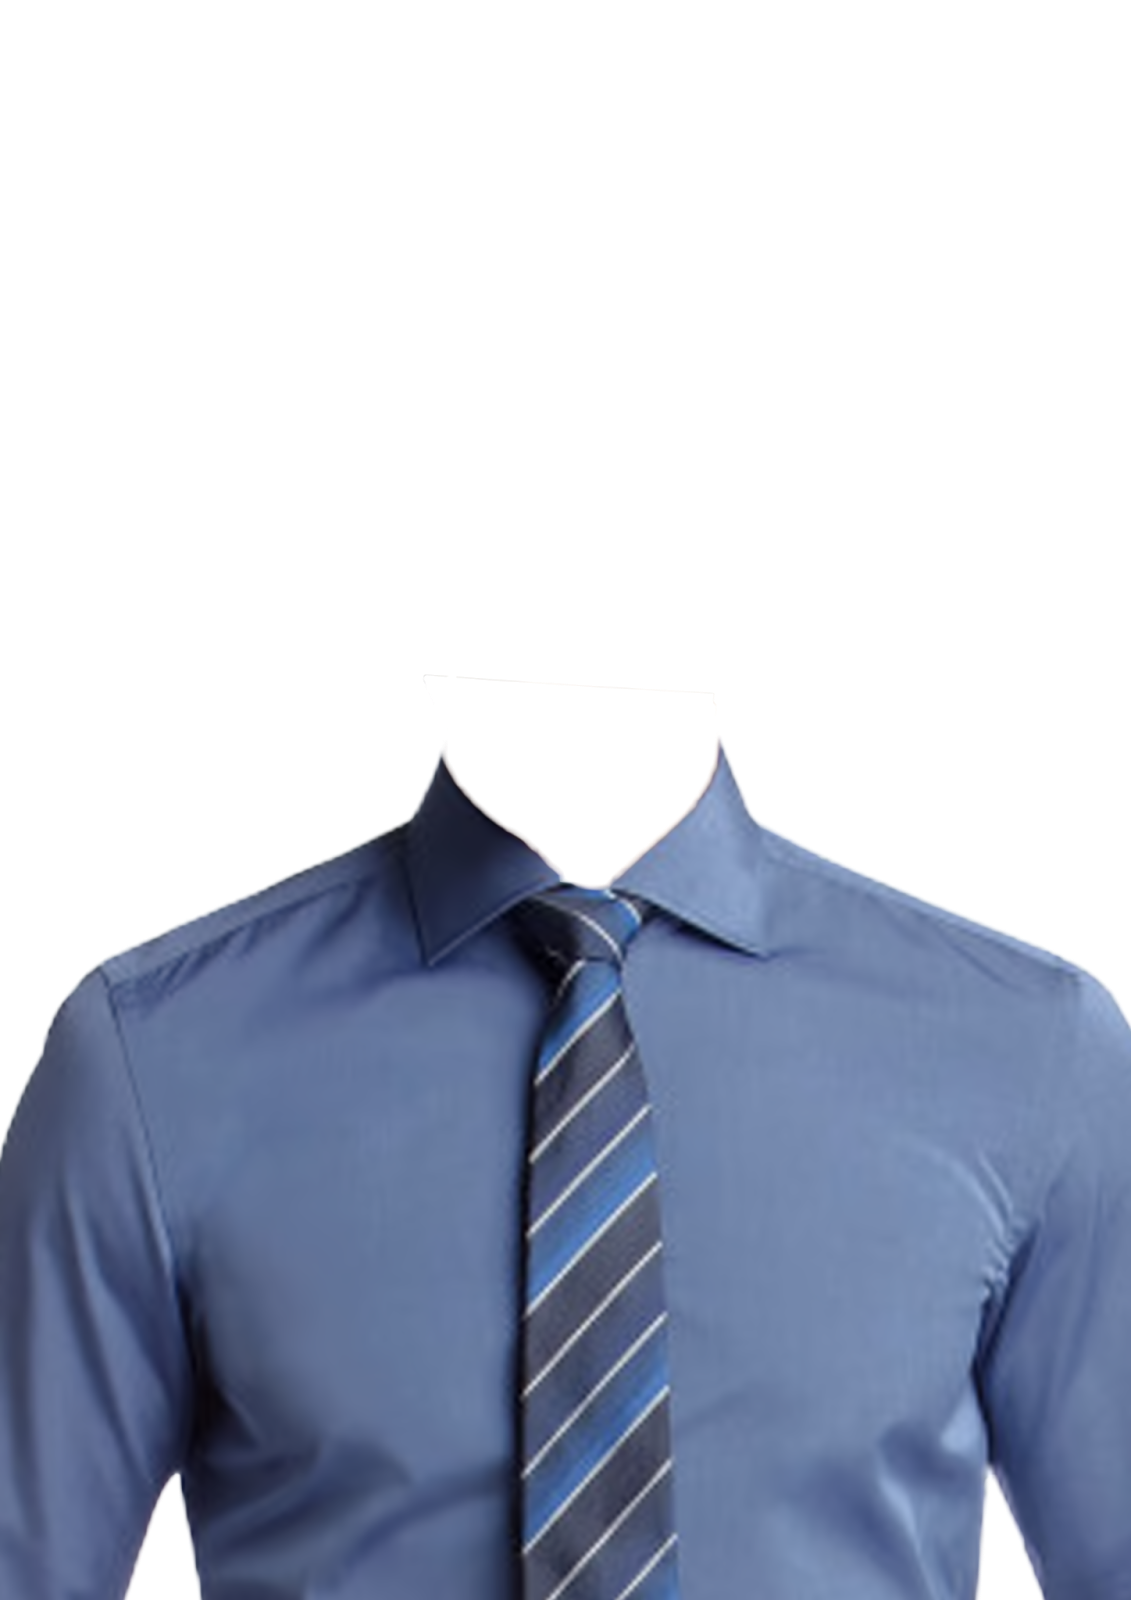 Camisas com gravatas PNG | Imagens para photoshop